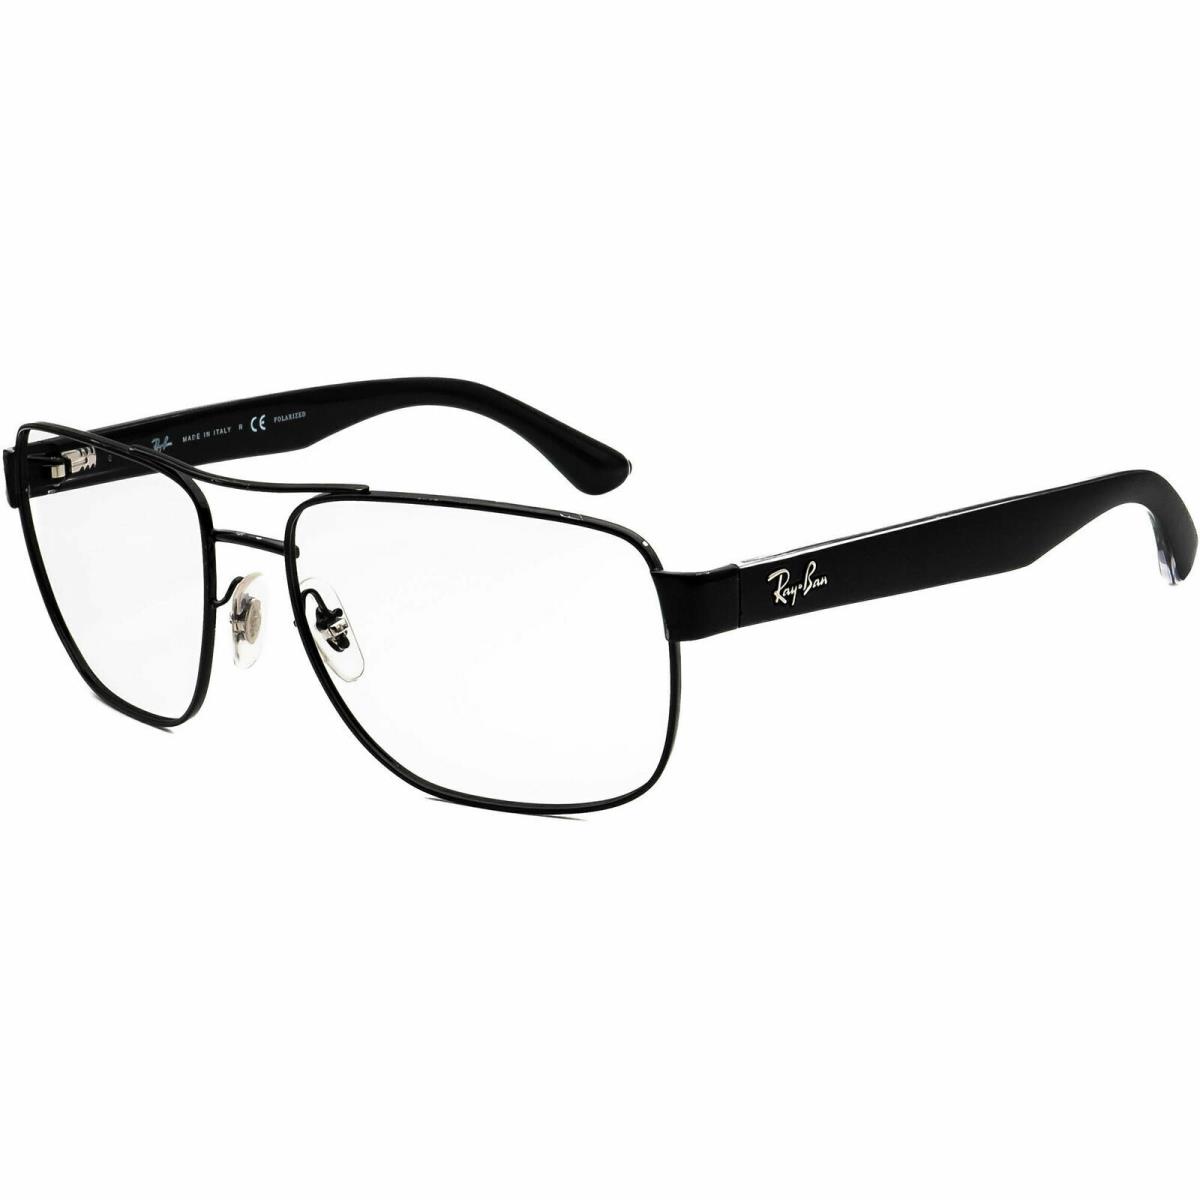 Ray-ban RB 3530 Pilot Men`s Sunglasses Eyeglasses Frame Only + Case Italy